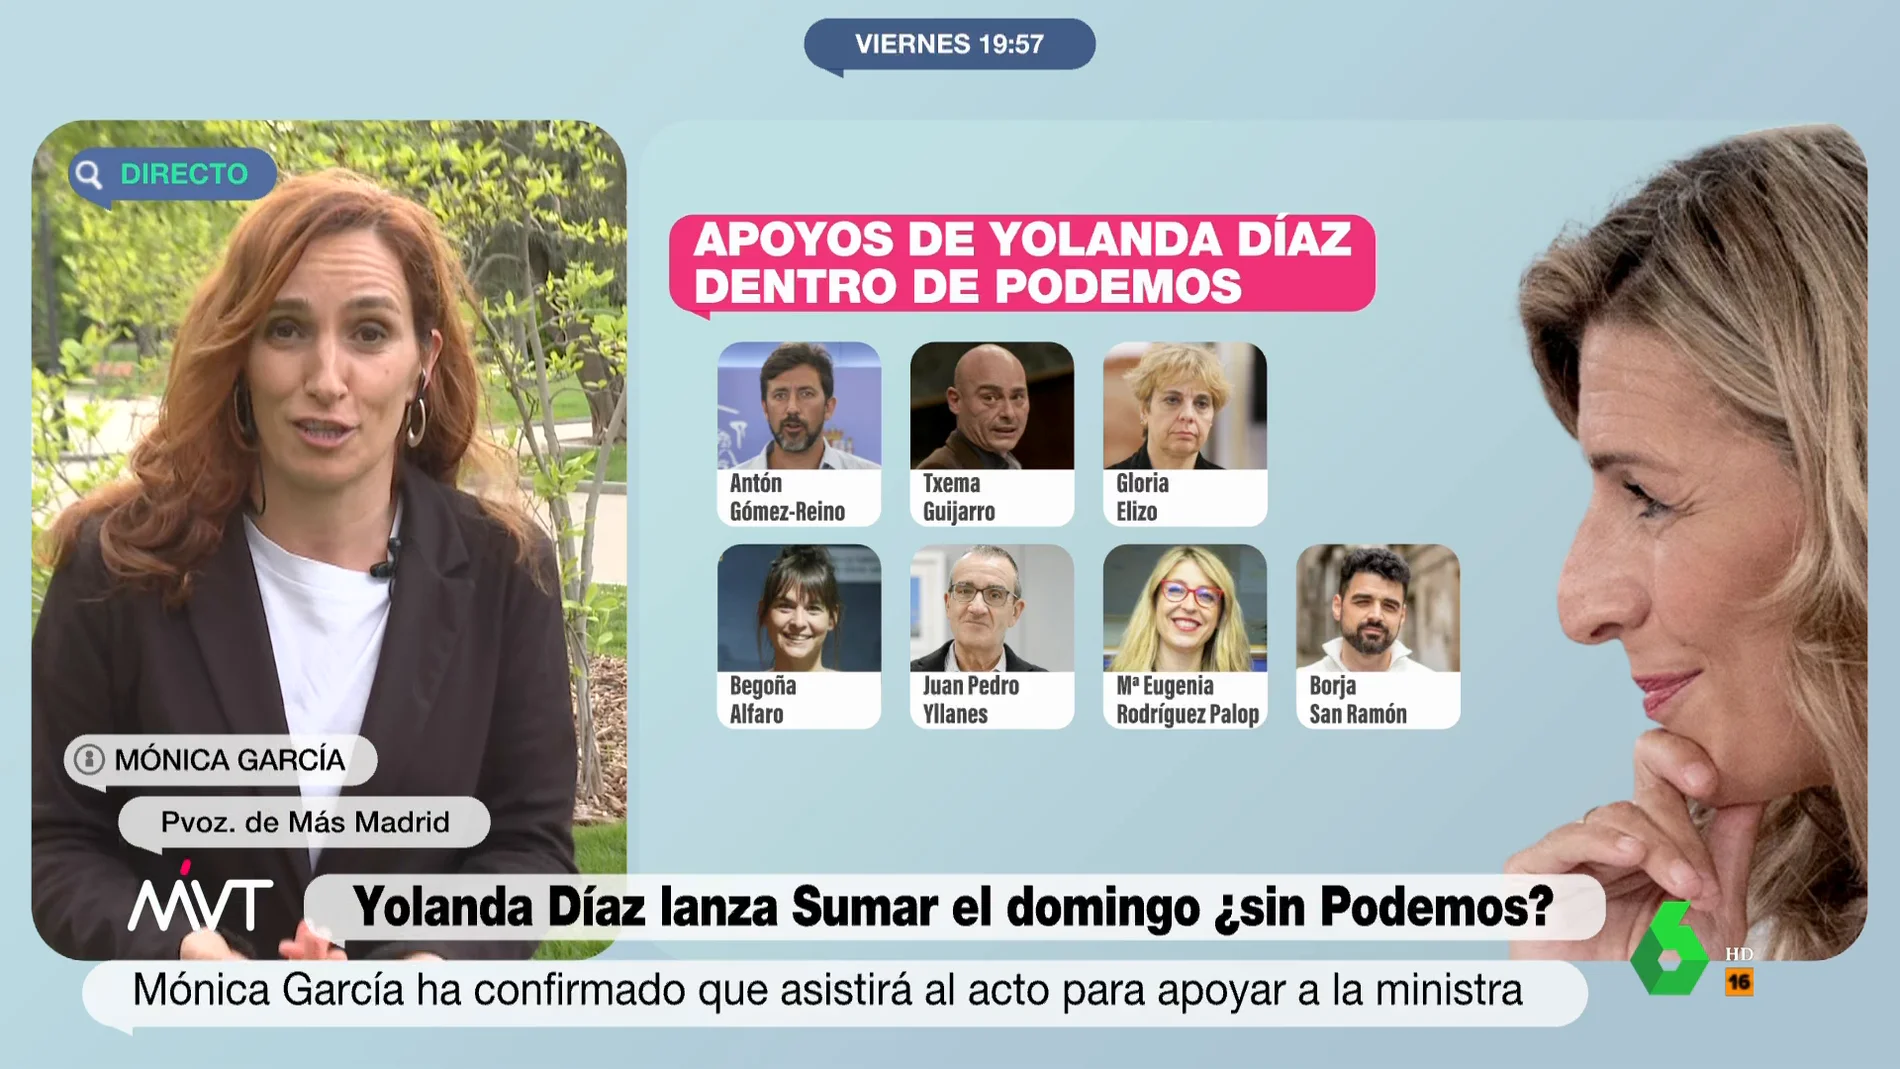 Mónica García reitera su apoyo a Yolanda Díaz y evita hablar de Podemos: "Hay quienes quieren decirnos lo que tenemos que hacer"